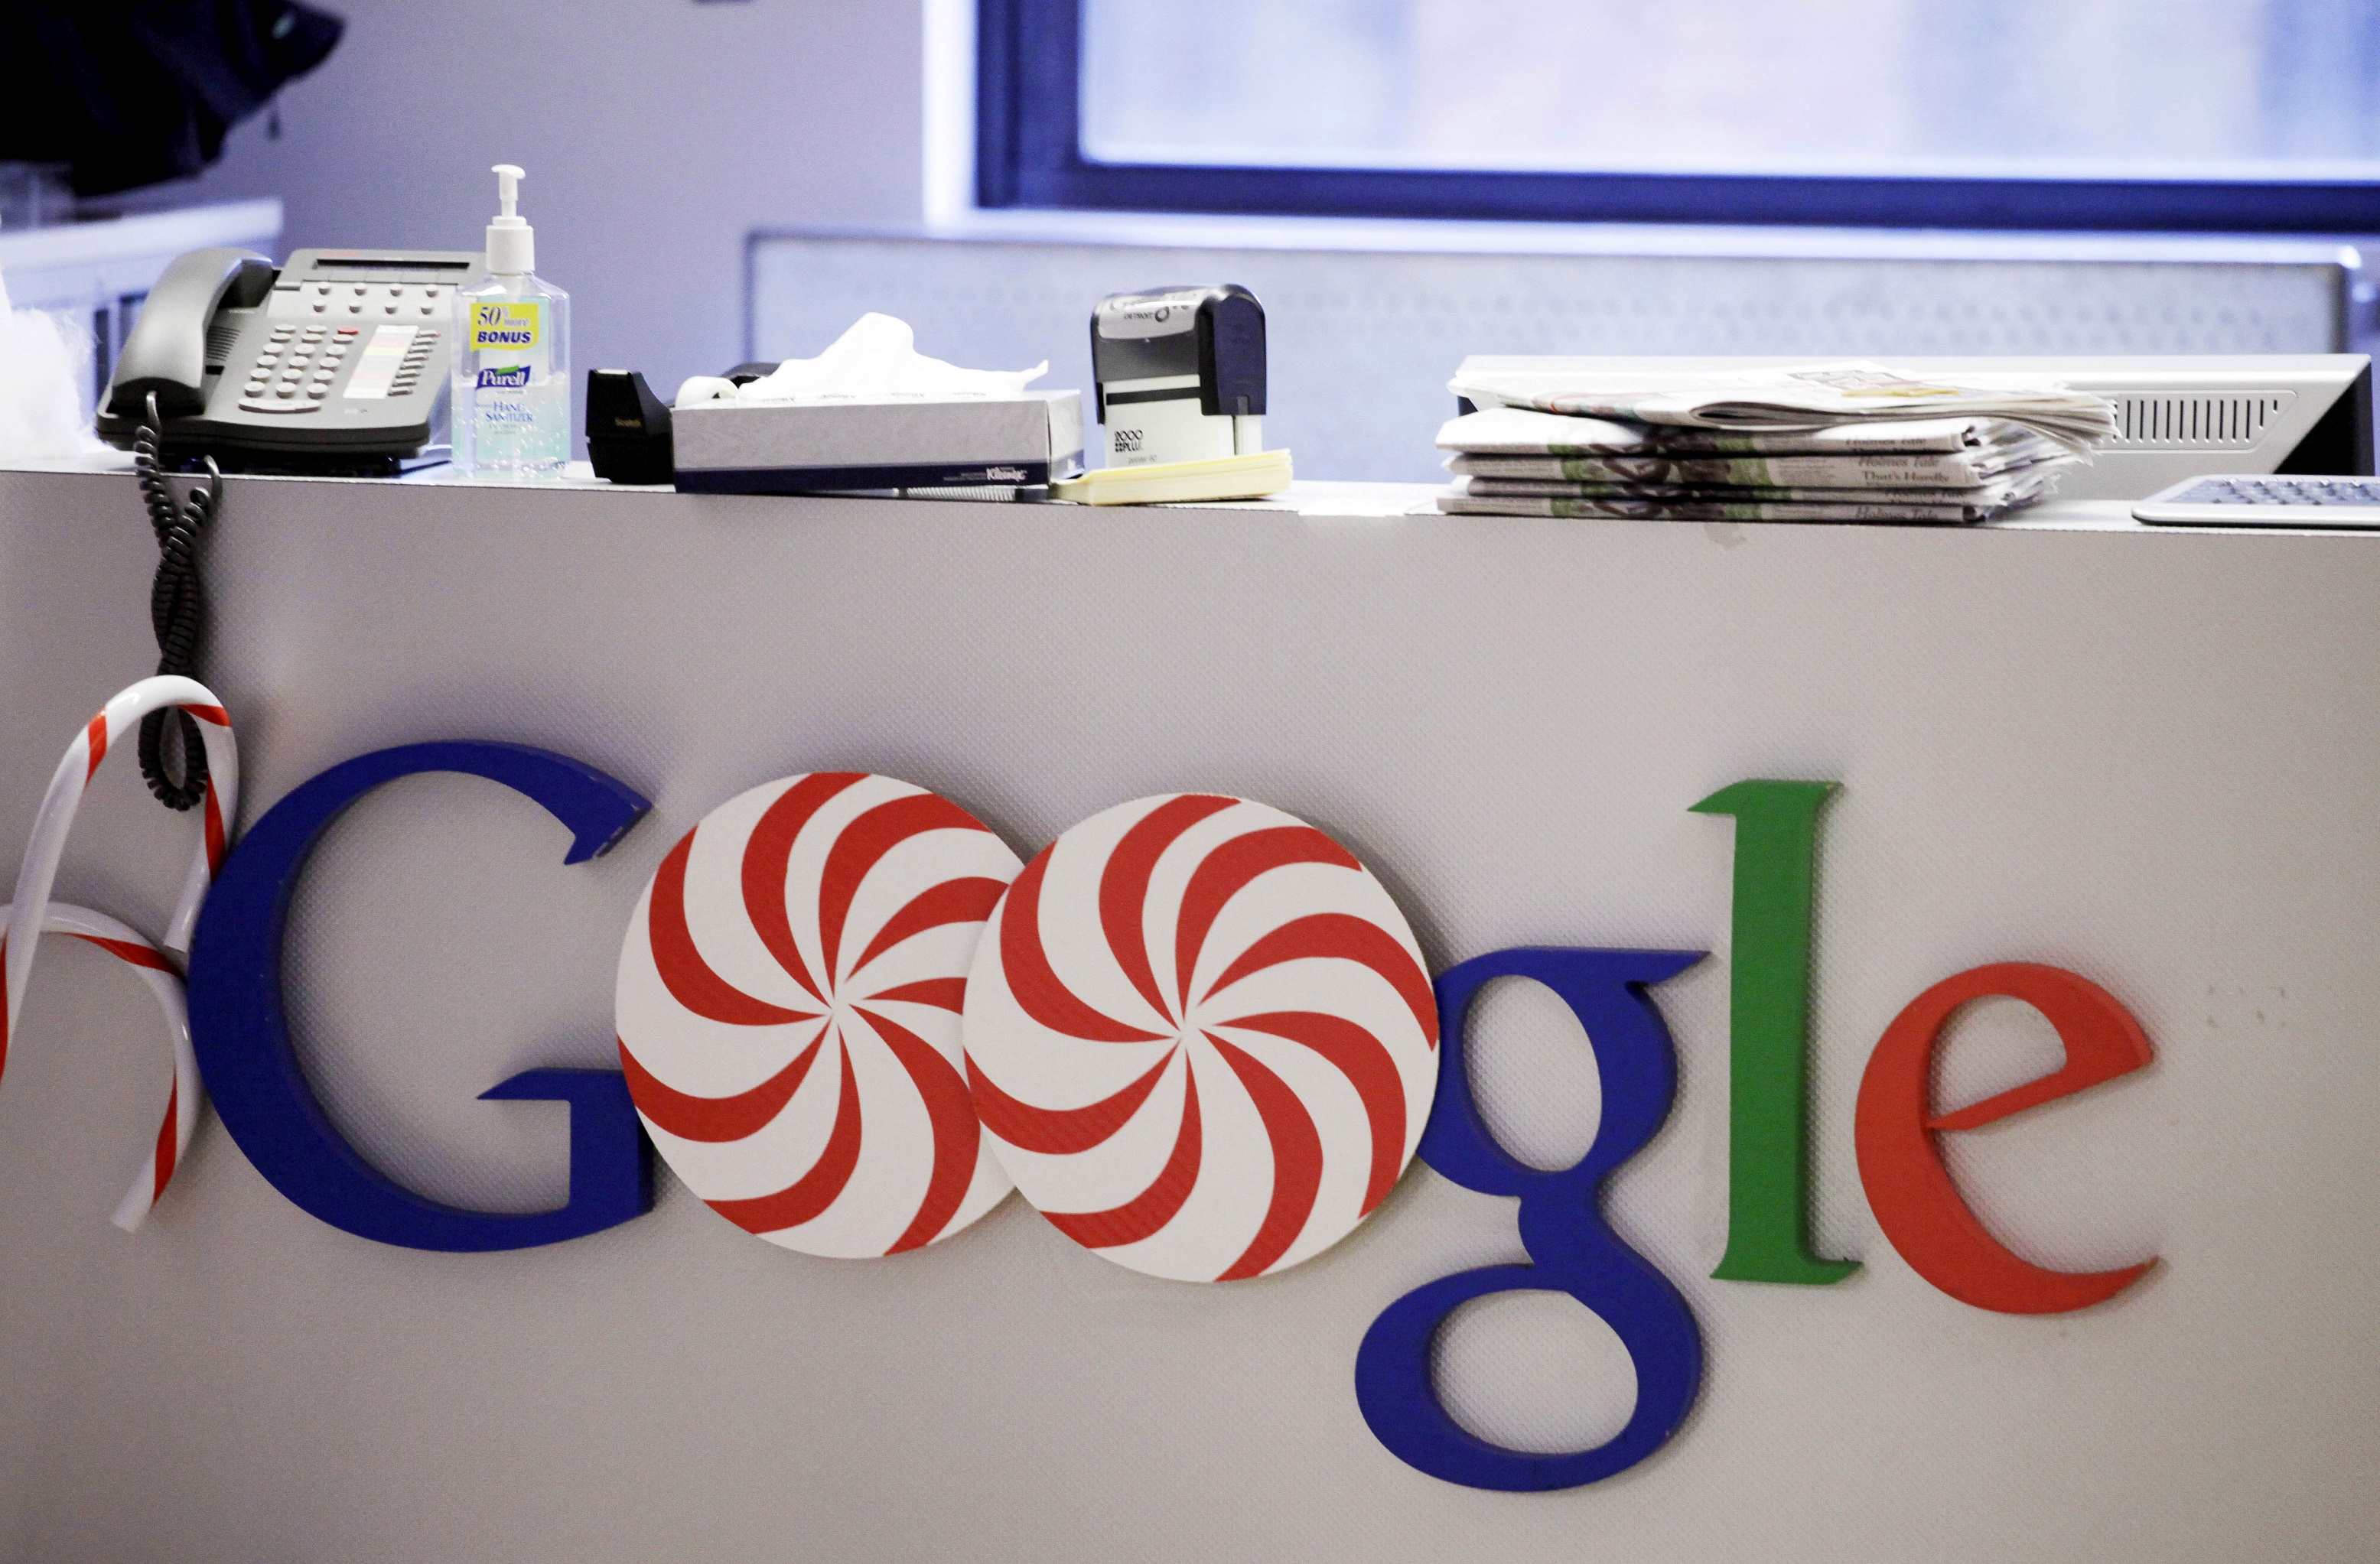 Η Google ανακάλυψε το απόλυτο μυστικό της επιτυχίας στο χώρο εργασίας